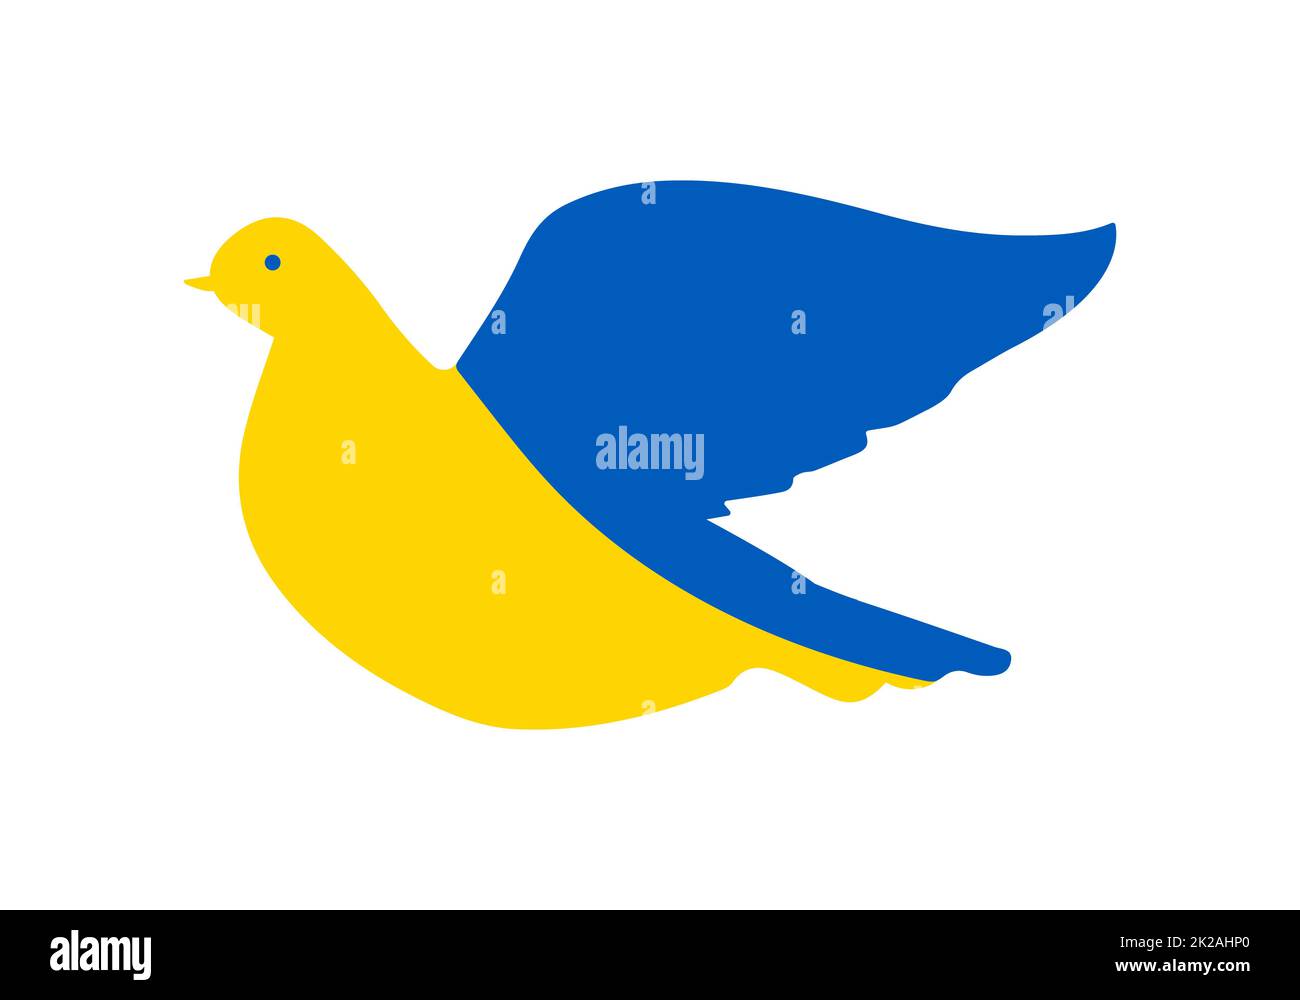 Die fliegende Taube symbolisiert das freie Land der Ukraine. Das Konzept ist ein flatternder Vogel, der in den Farben der ukrainischen Nationalflagge gemalt ist. Symbol der Unabhängigkeit. Vektordarstellung auf weißem Hintergrund. Stockfoto